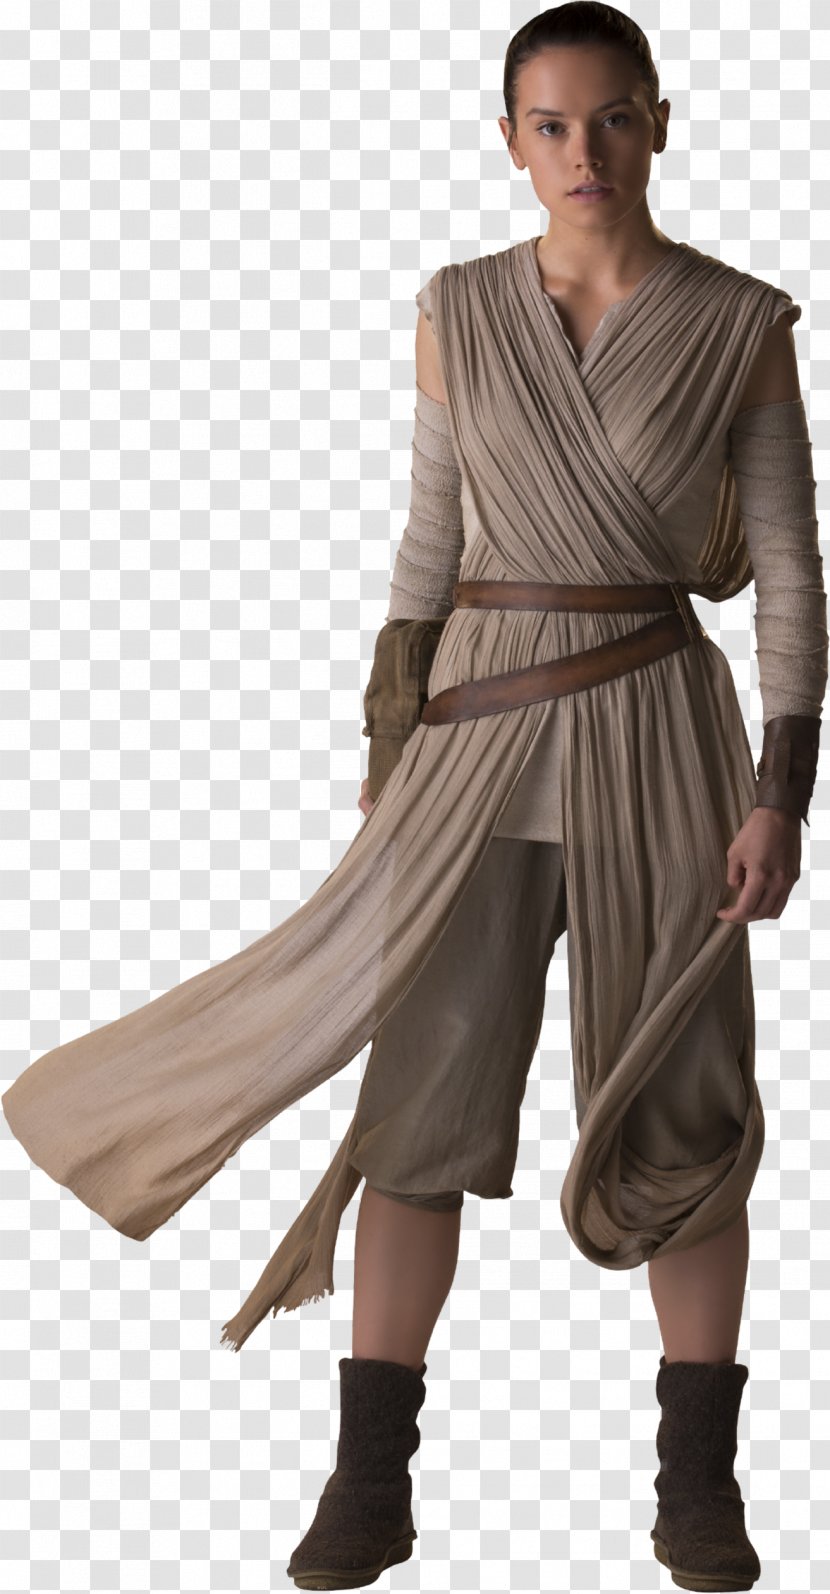 Rey Star Wars Episode VII Daisy Ridley Luke Skywalker Finn - Forces Of Destiny - Bandage Transparent PNG